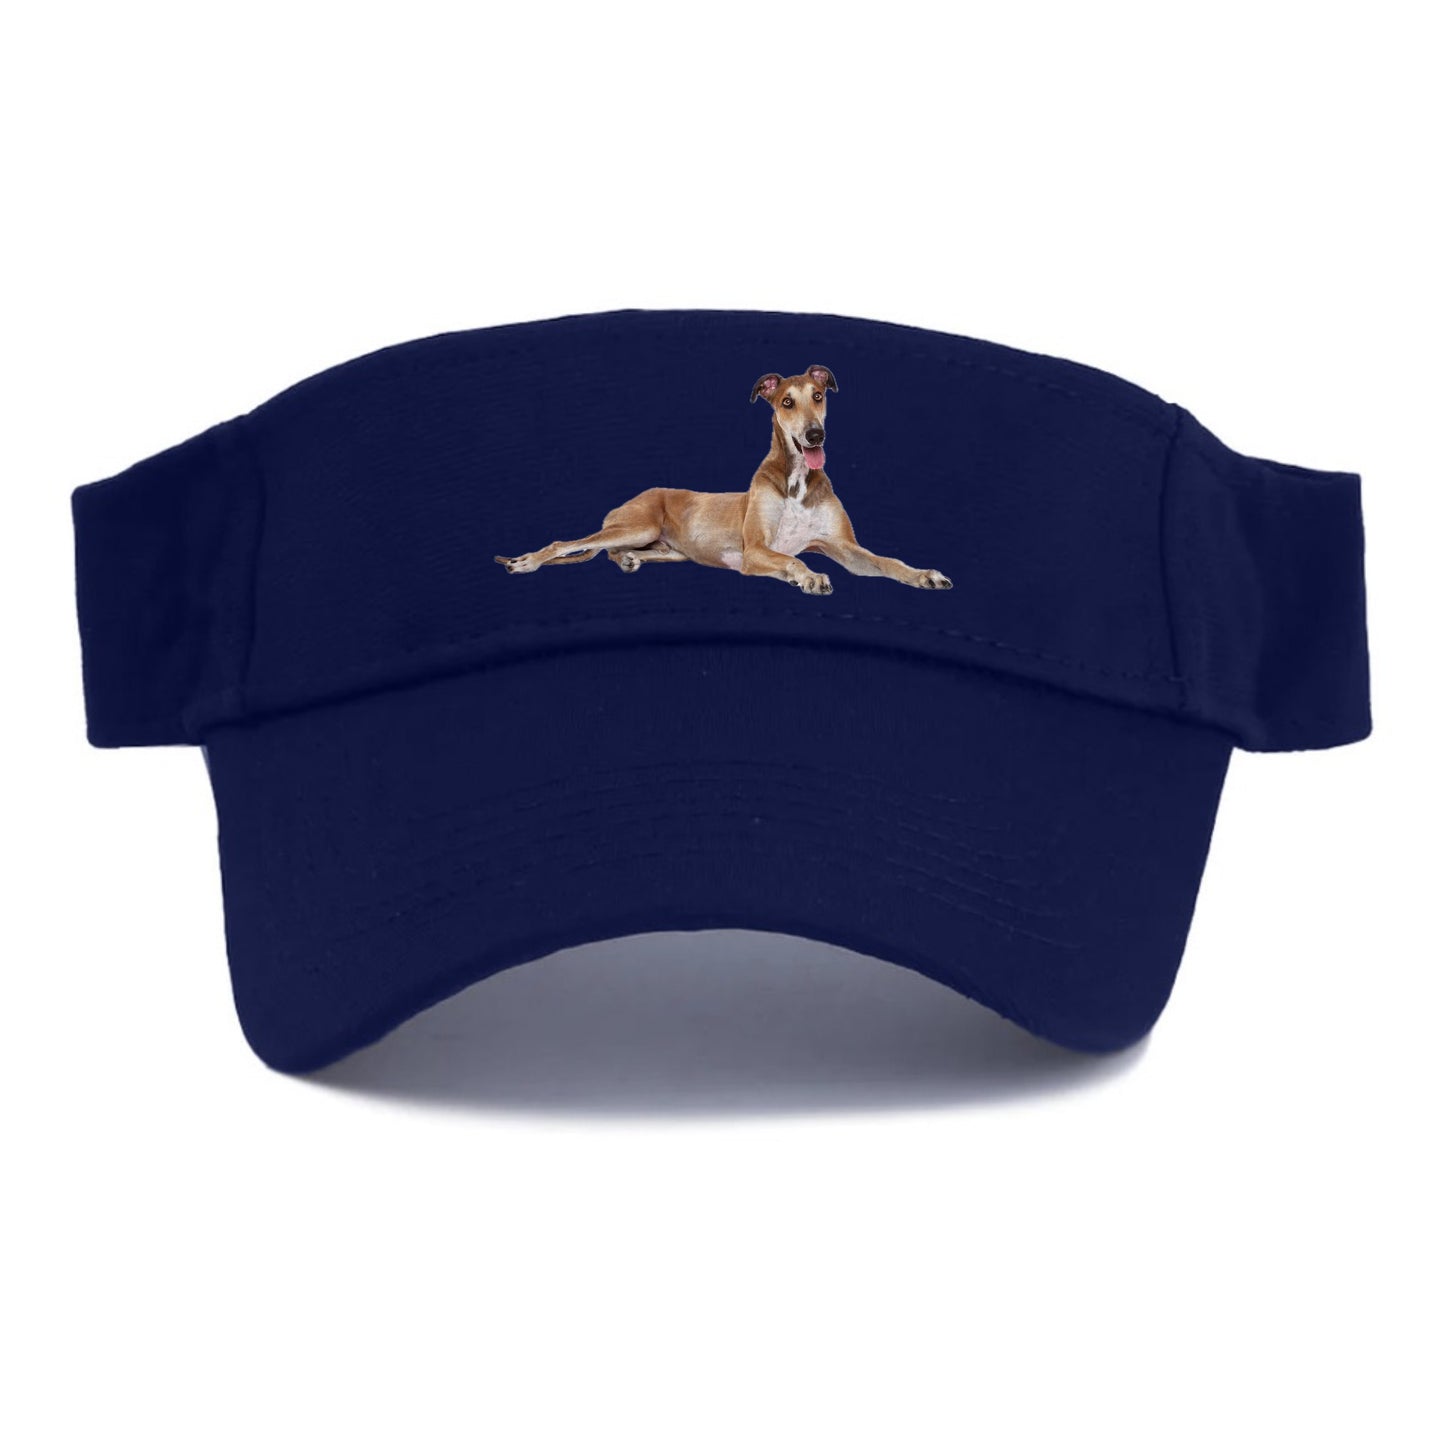 Greyhound Hat